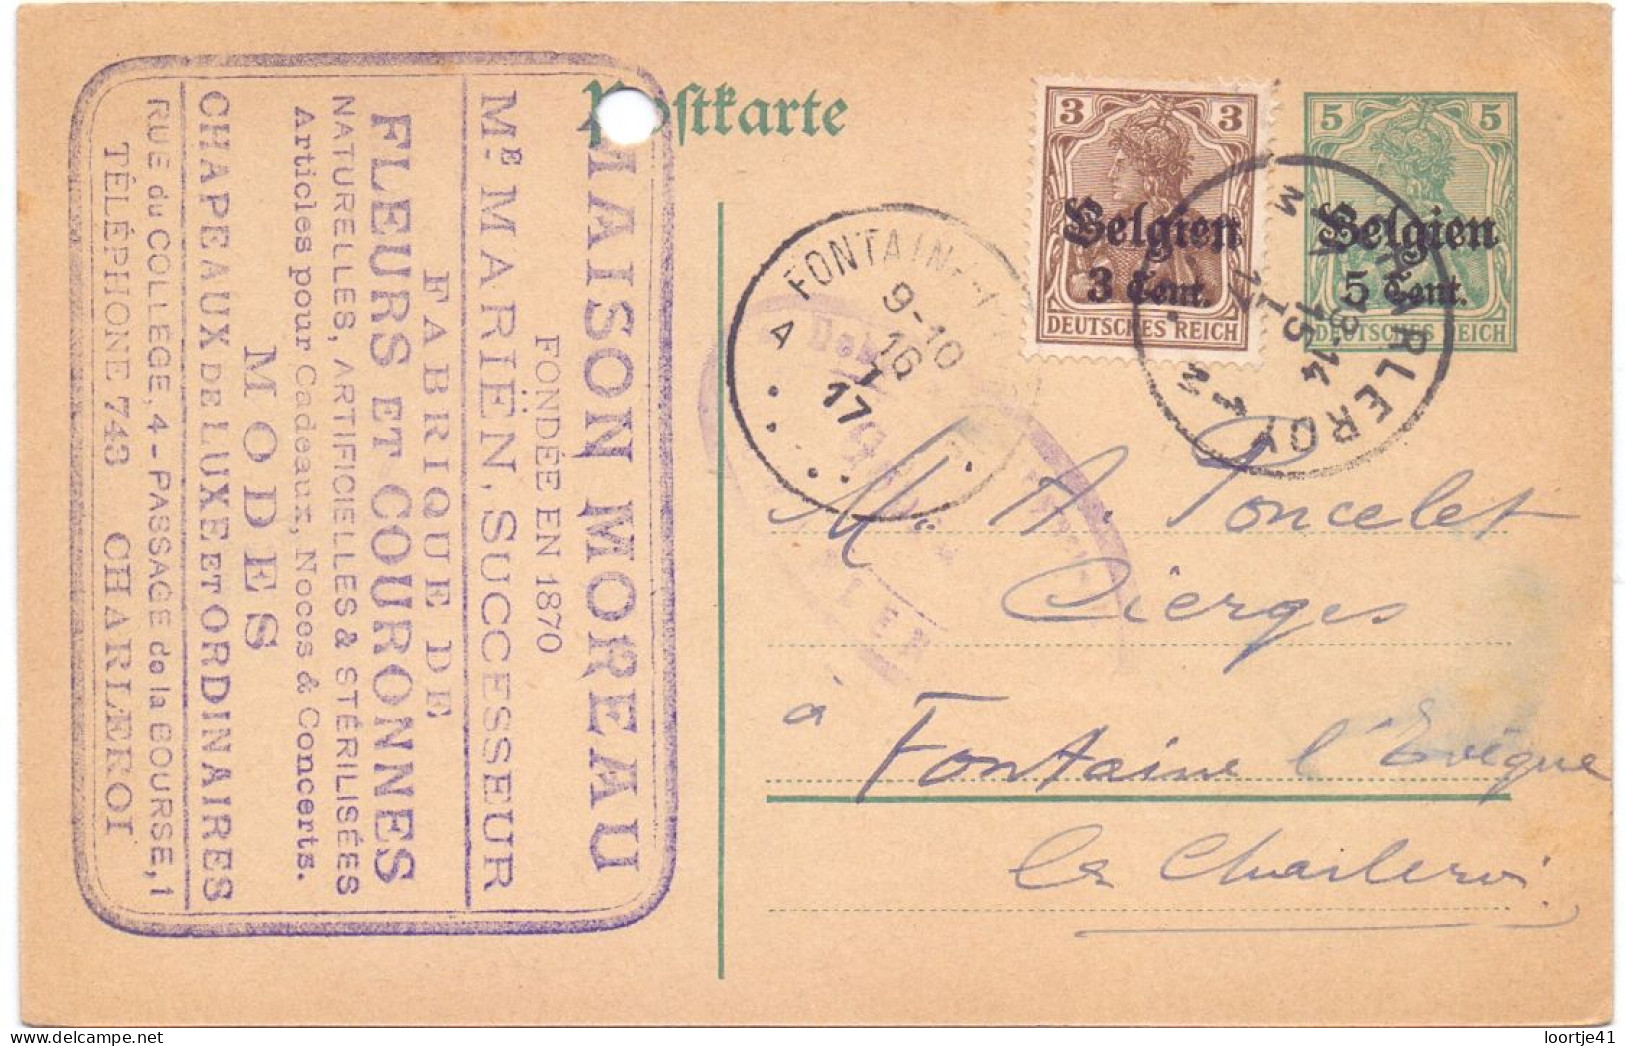 Briefkaart Carte Postale Postkarte Duitse Bezetting - Maison Moreau Charleroi à Fontaine L'Eveque - 1917 - Occupation Allemande